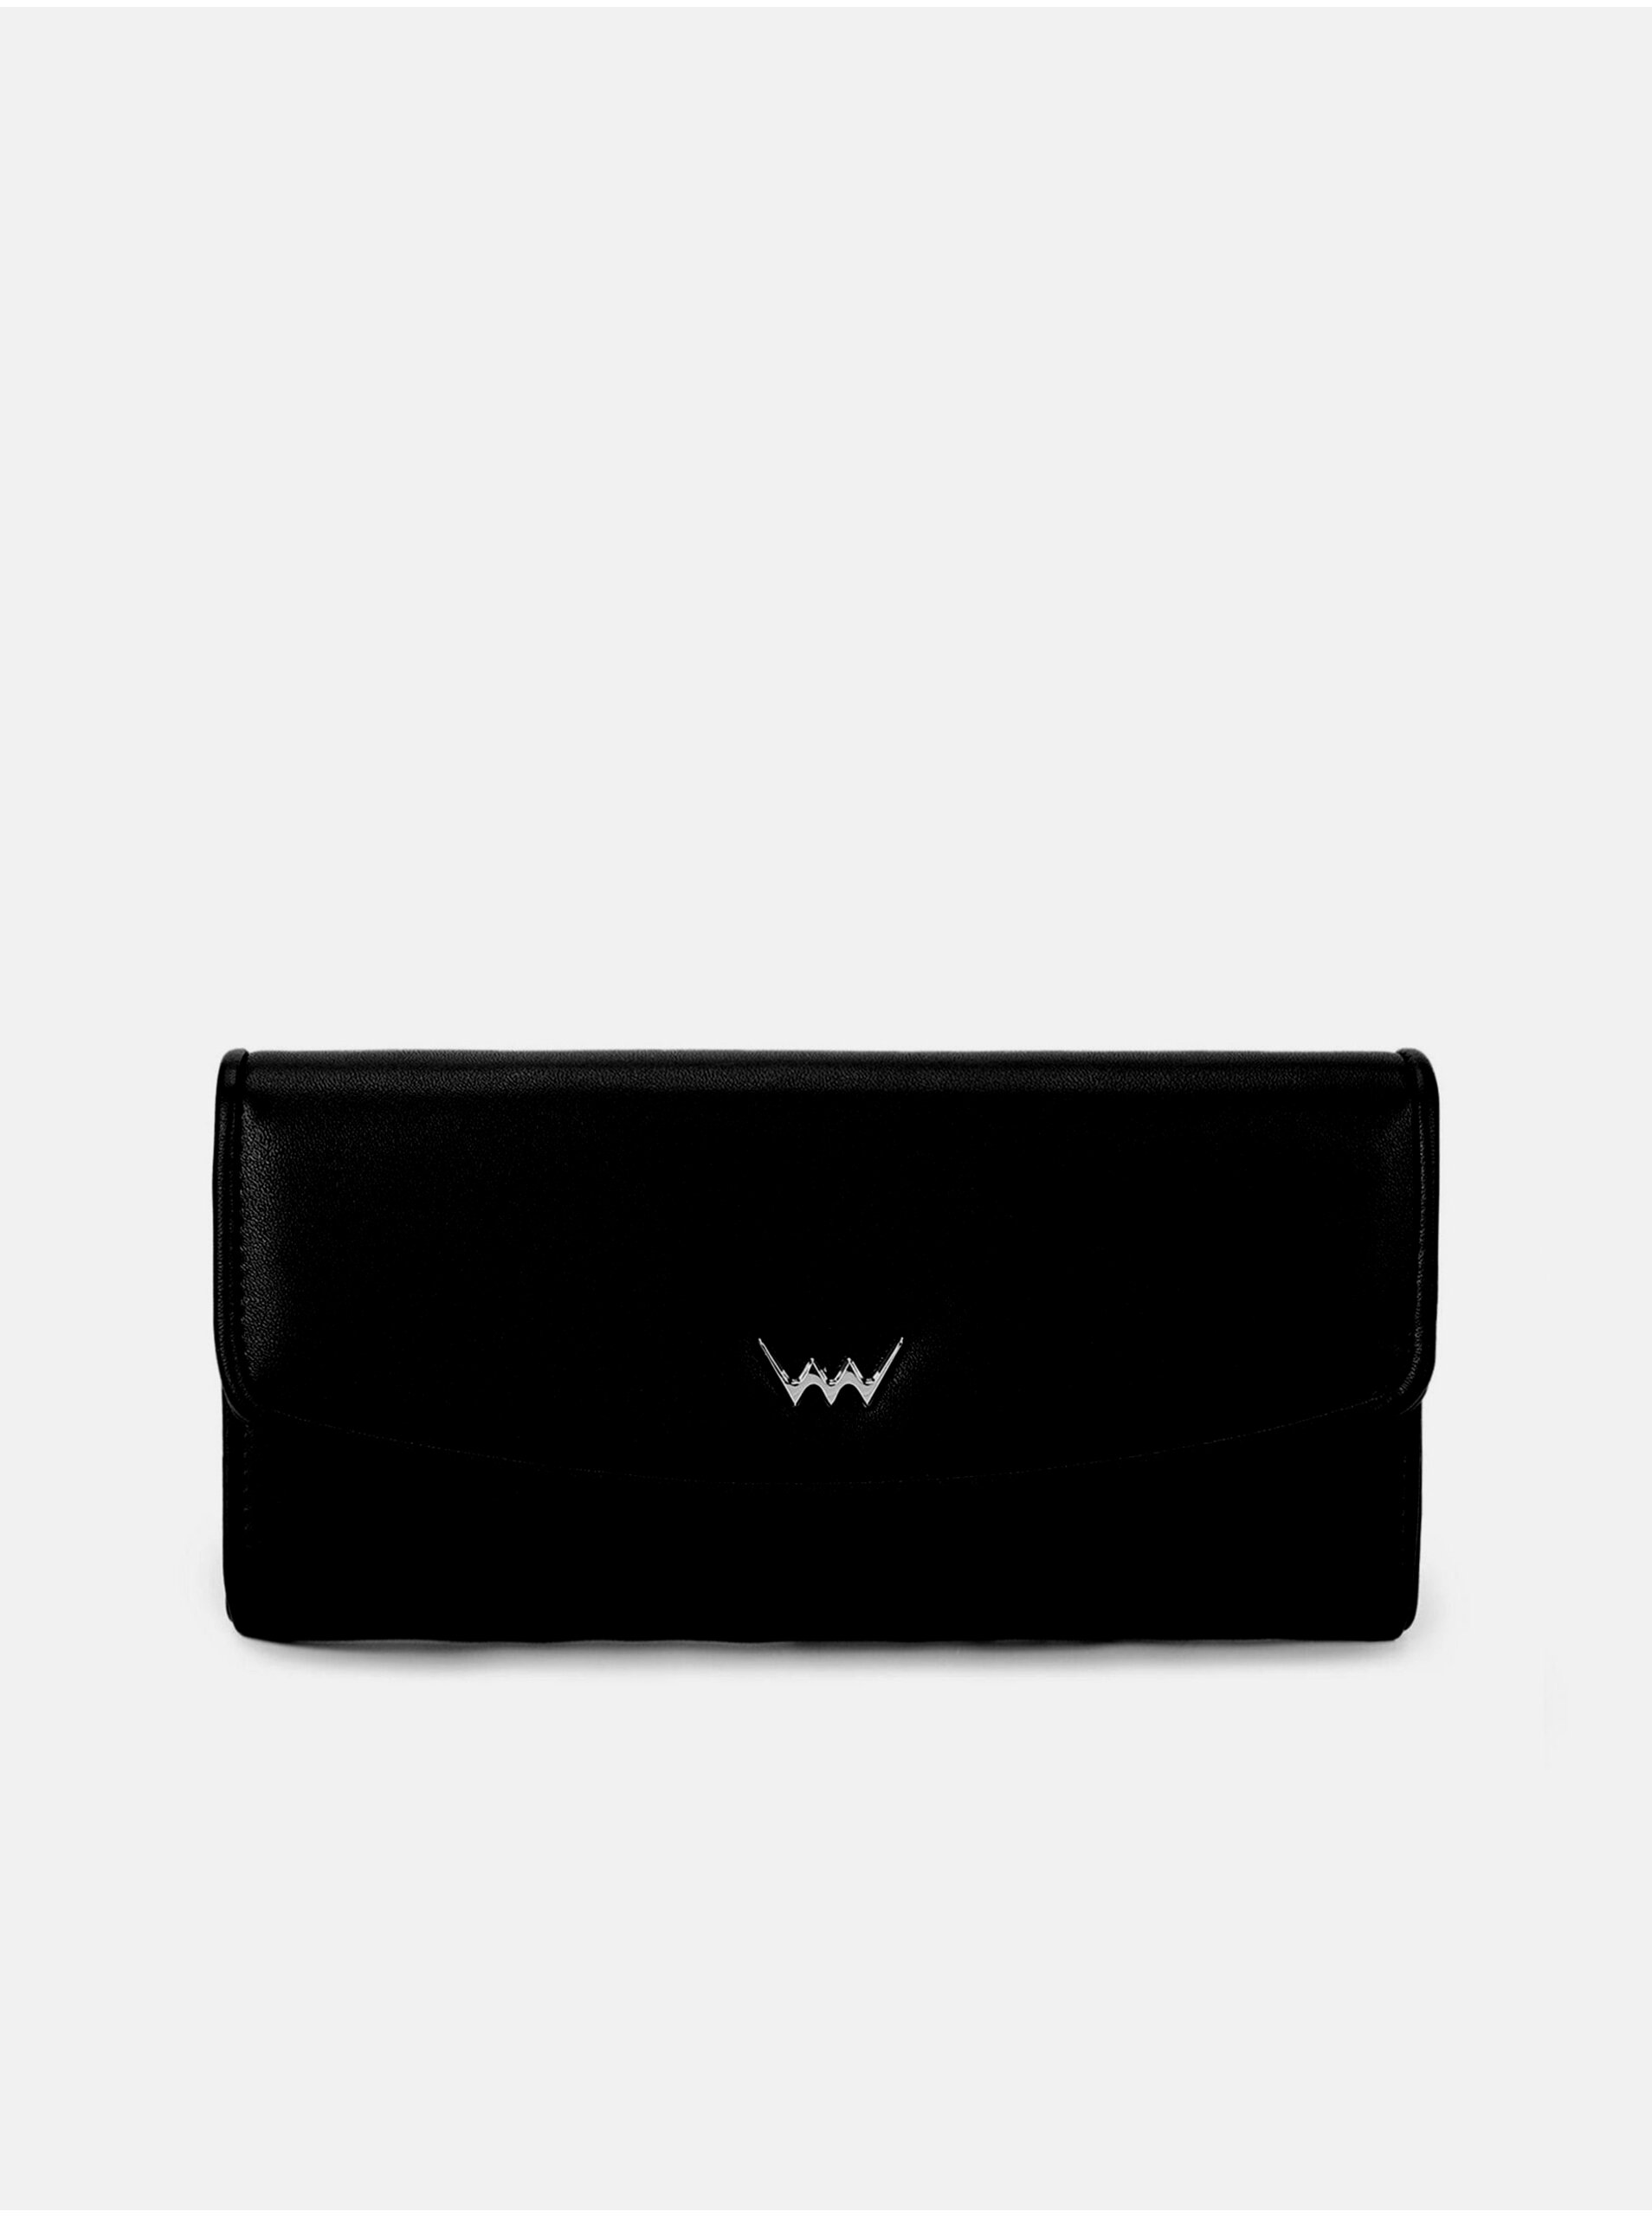 E-shop Čierna dámska peňaženka s chlopňou VUCH Alfio Black